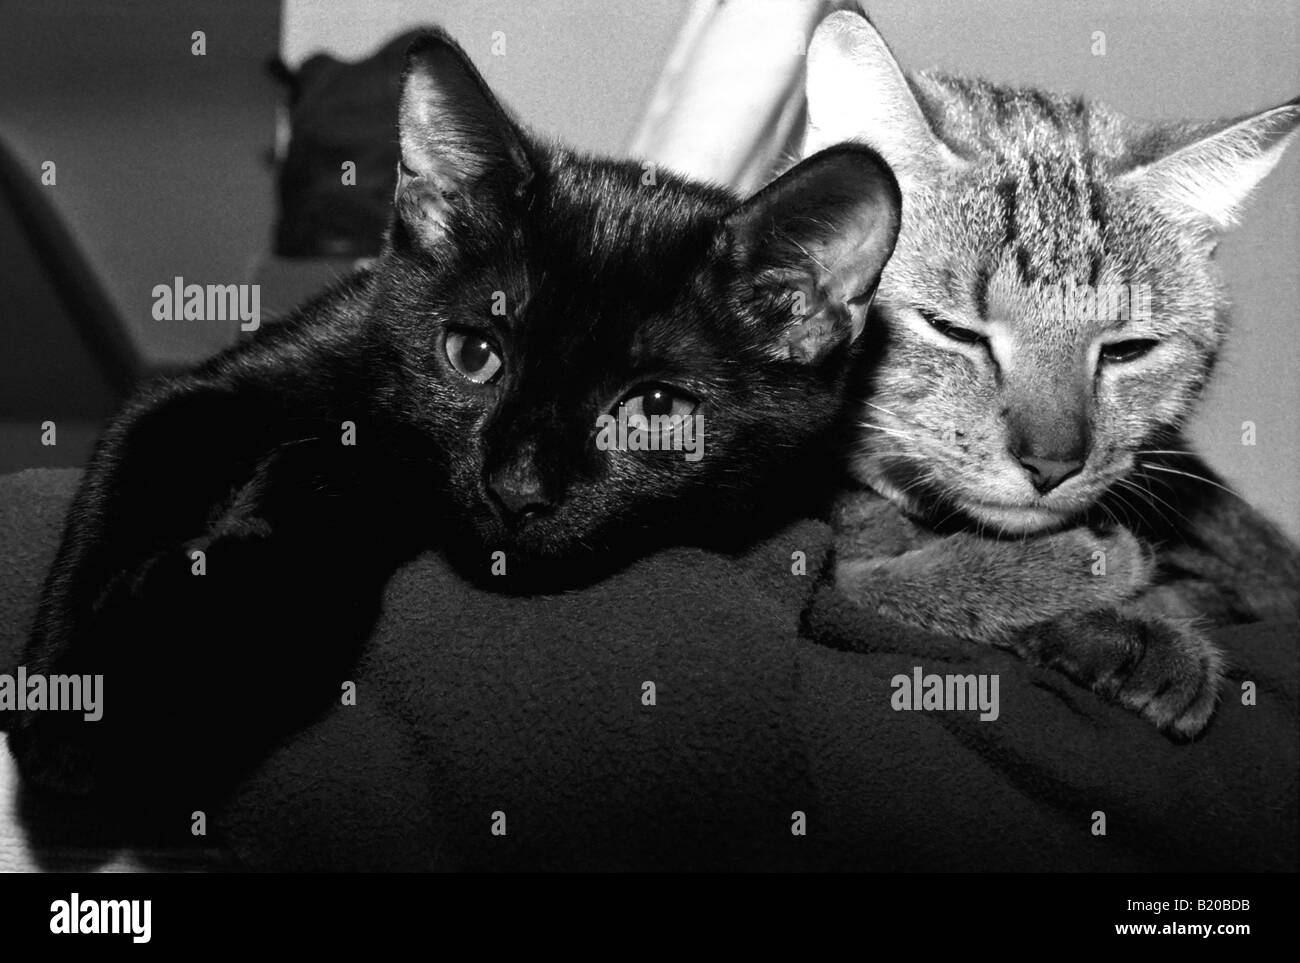 Image en noir et blanc de deux chats - Mère, tabby, et sa fille,black cat, vous détendre à côté de l'autre Banque D'Images